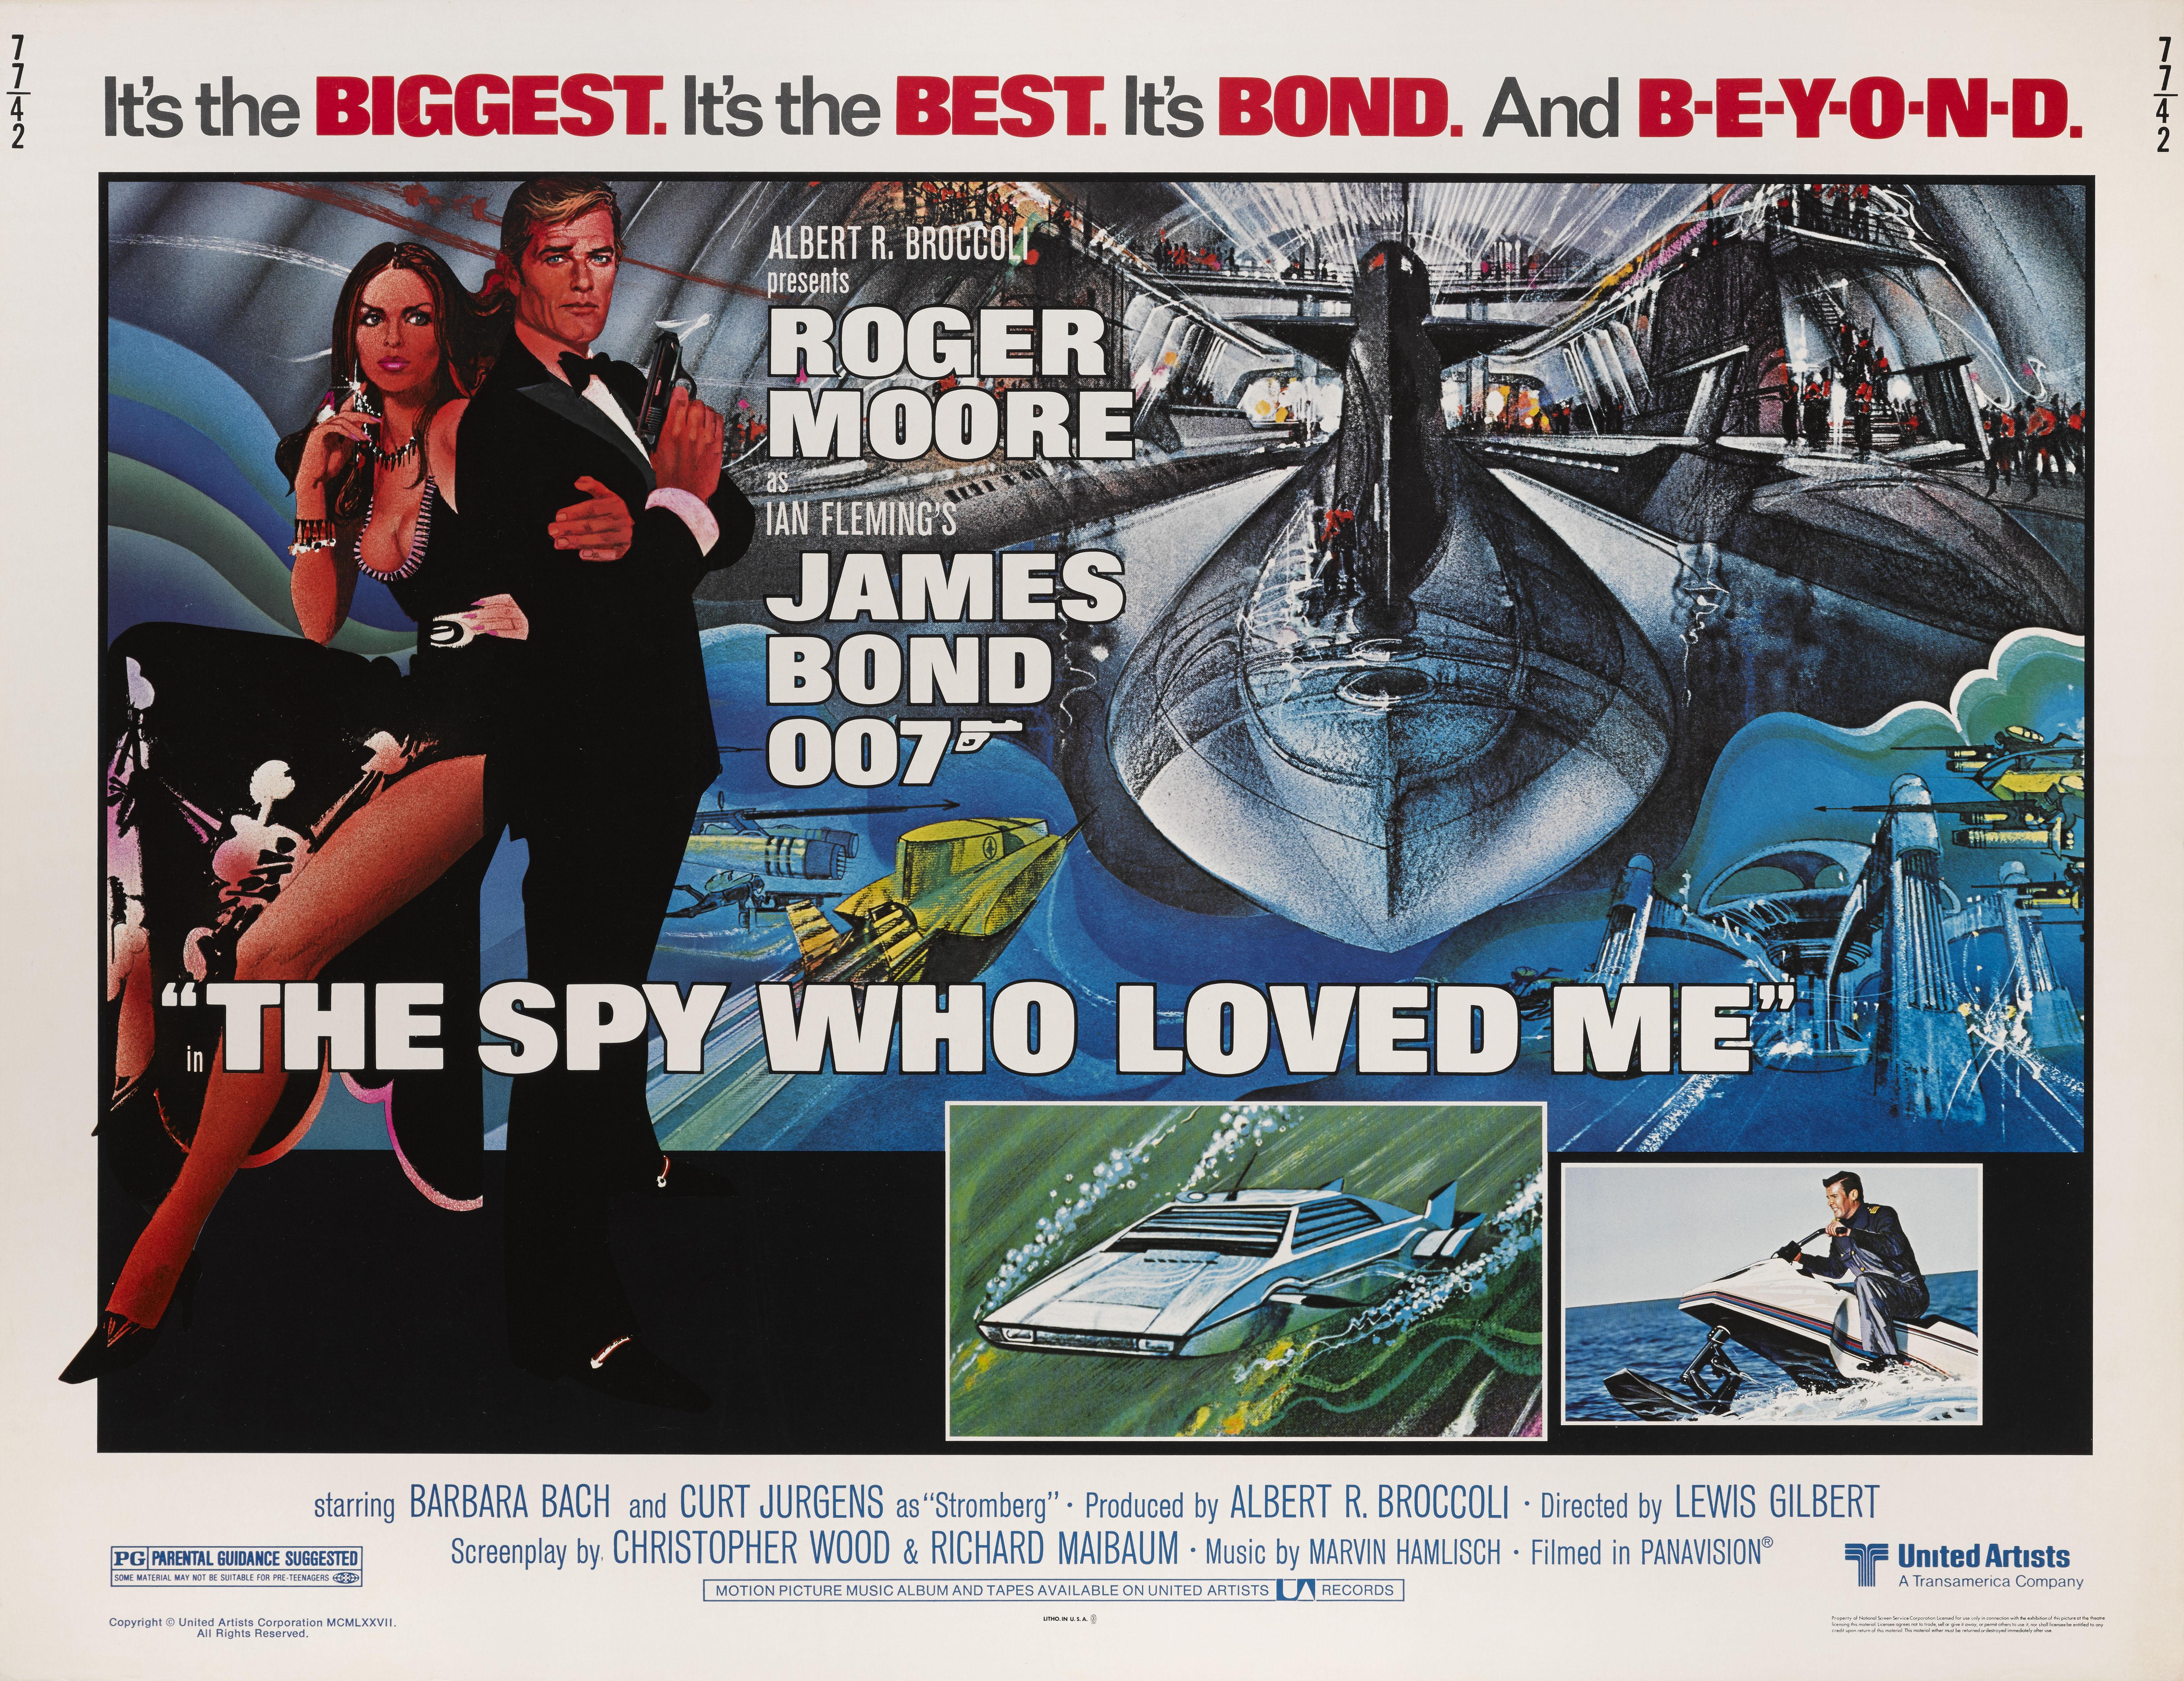 james bond 007 – der spion